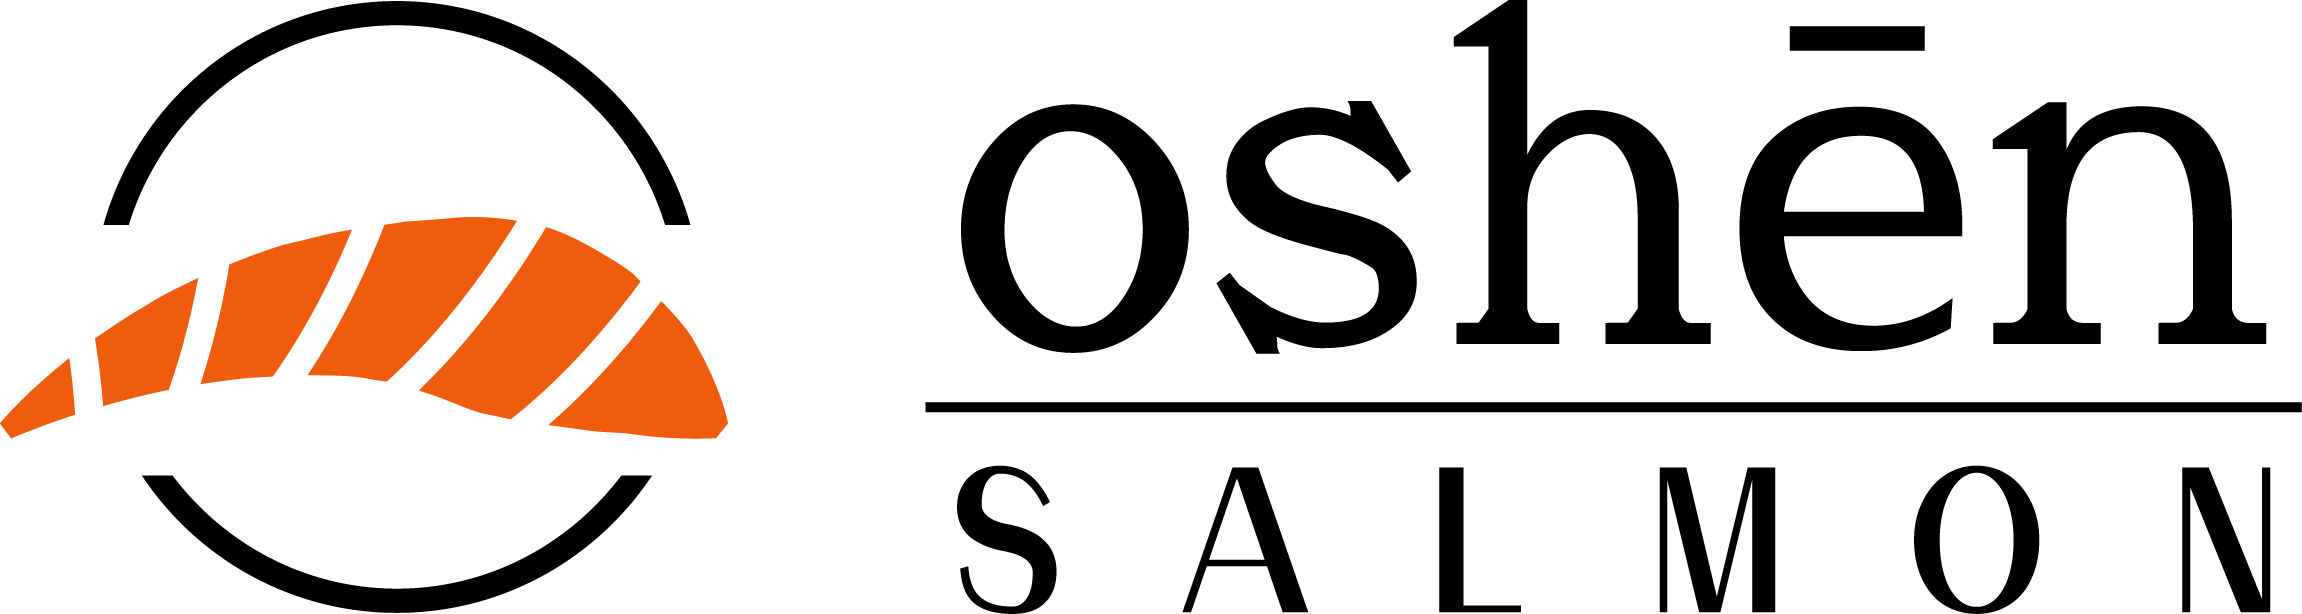 Oshen logo